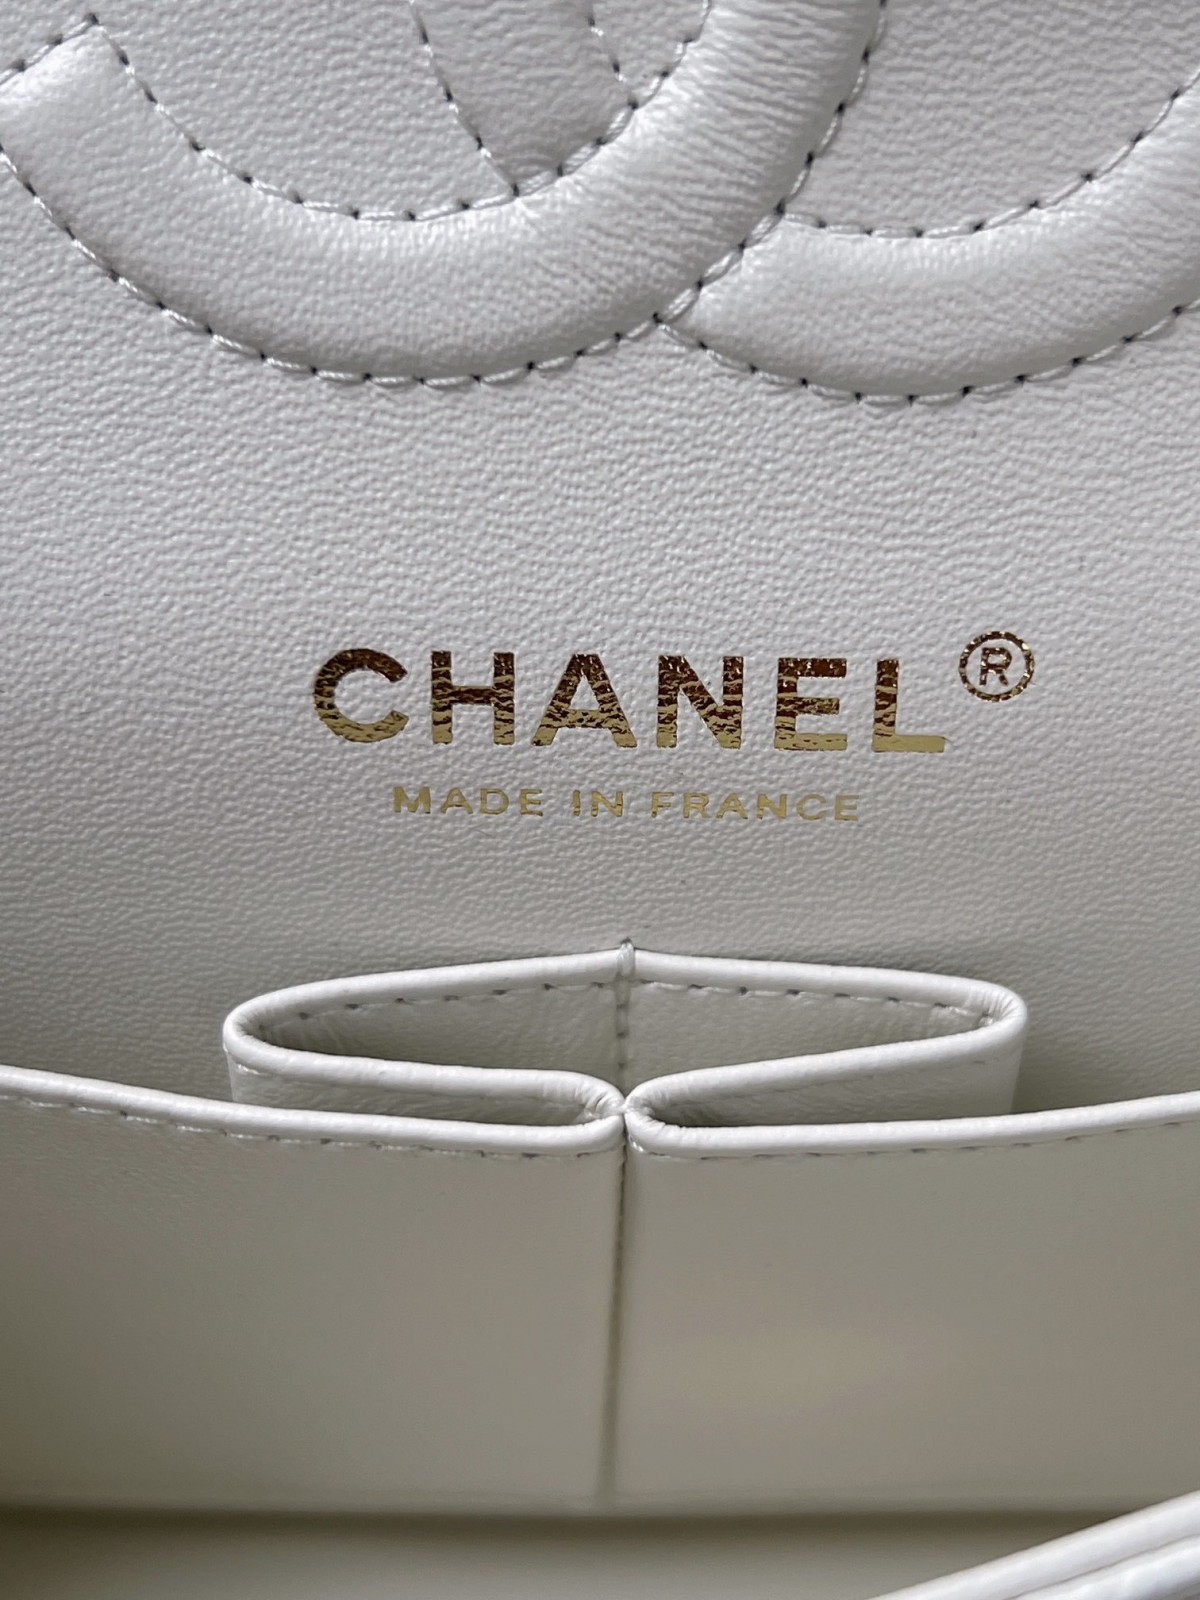 How good quality is a Shebag White Chanel Classic flap bag with gold and caviar leather（2023 Week 43）-Լավագույն որակի կեղծ Louis Vuitton պայուսակների առցանց խանութ, Replica դիզայներական պայուսակ ru